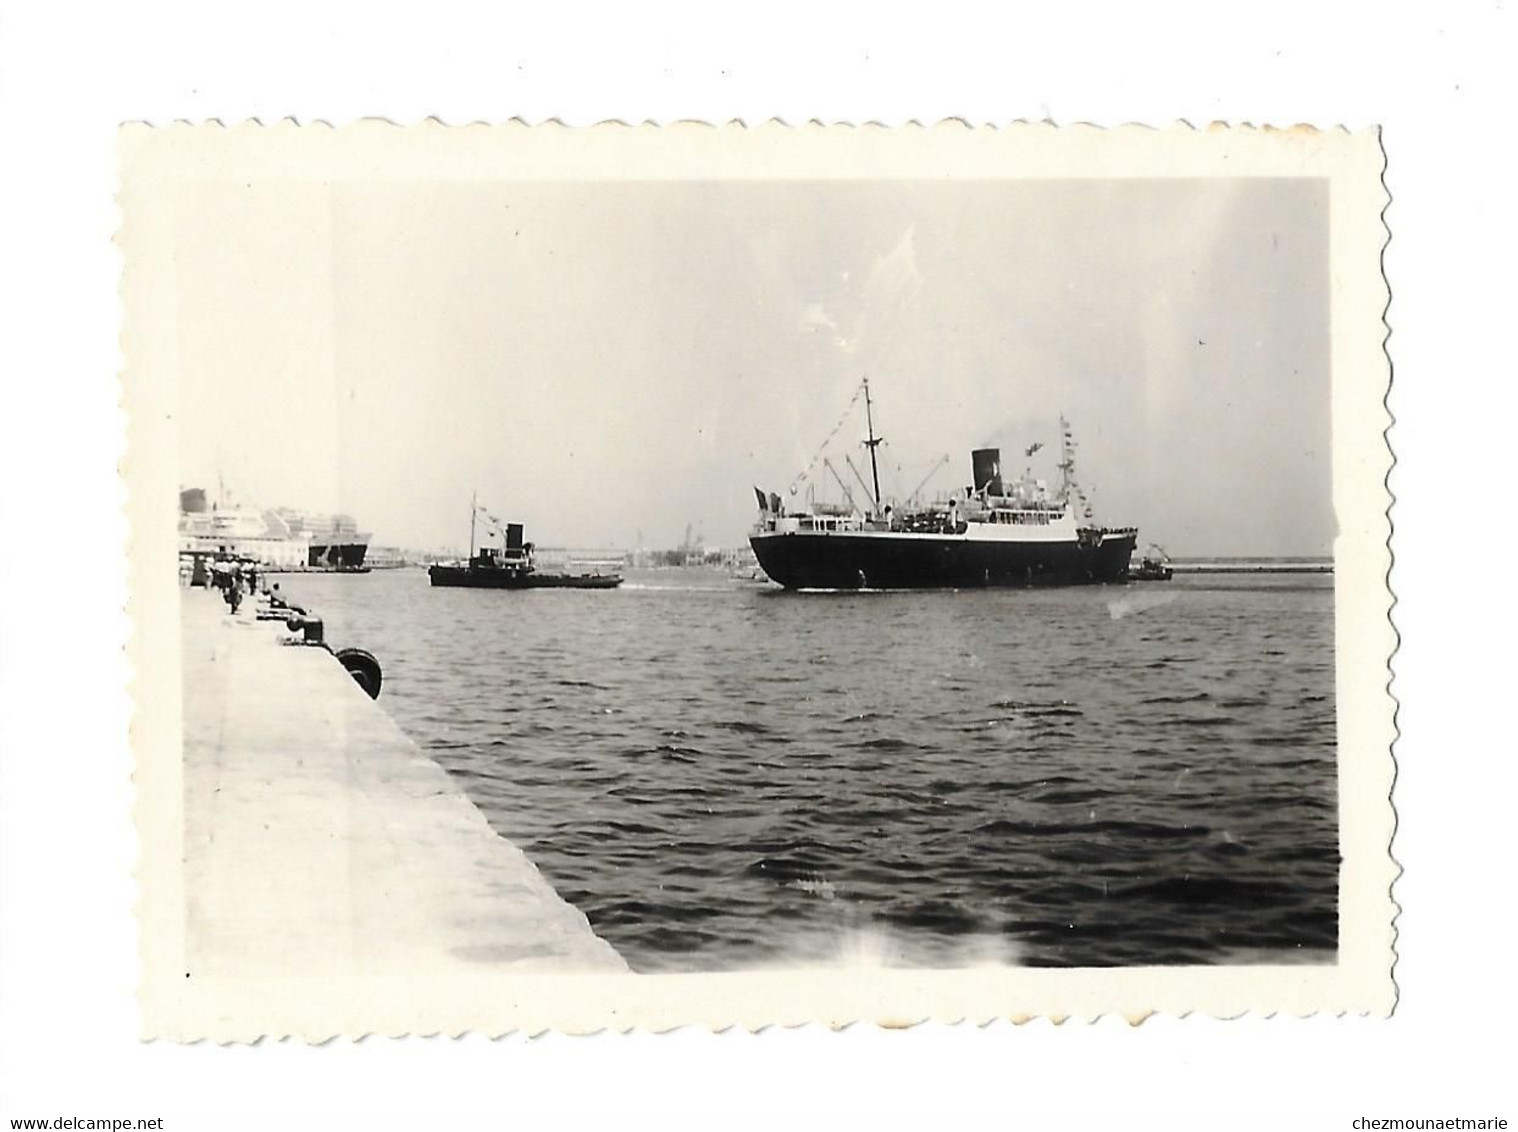 14 JUILLET 1957 ALGER - REMORQUEURS FAISANT TOURNER UN BATEAU - PHOTO - Barcos